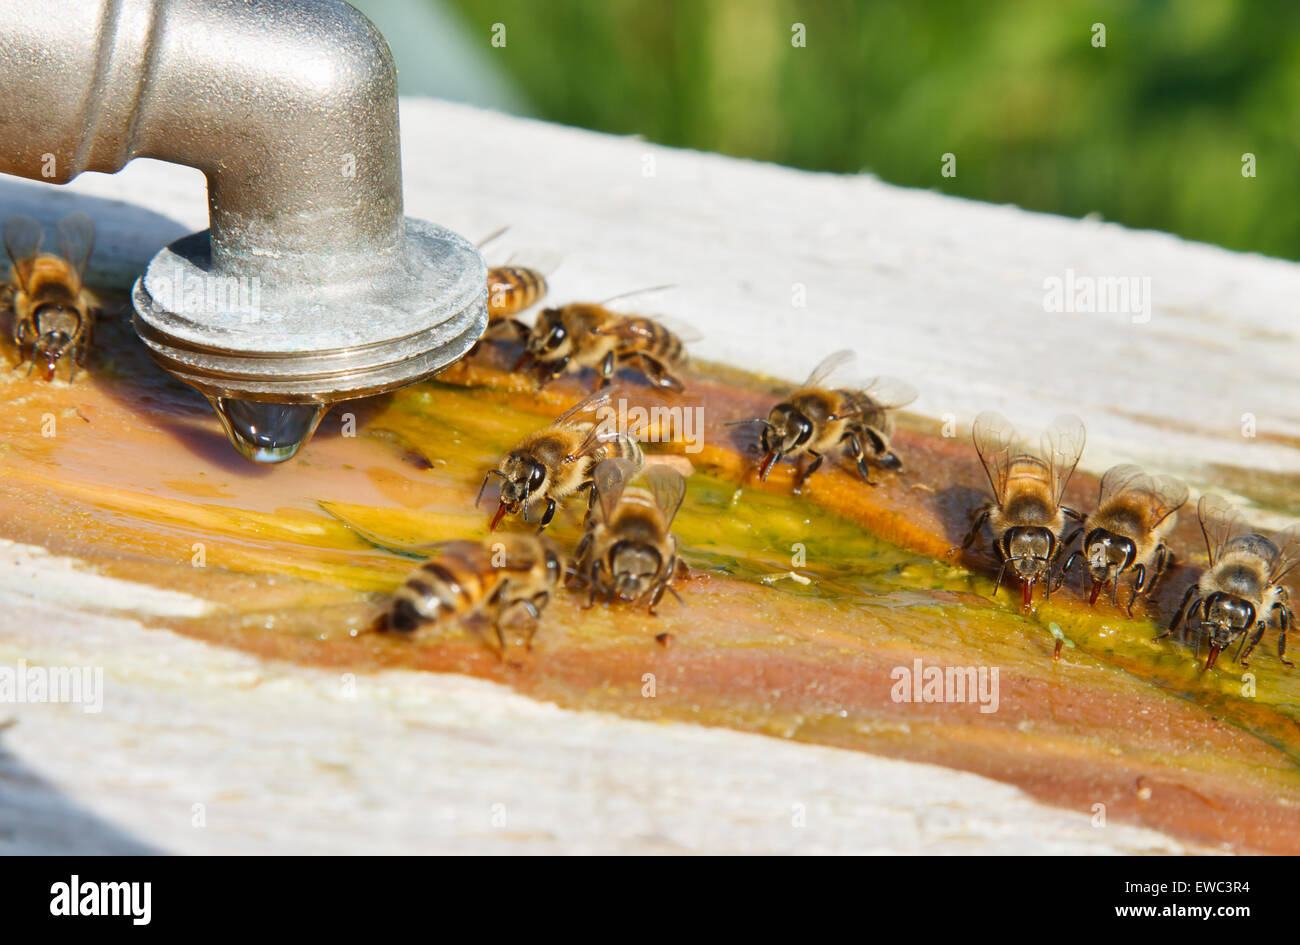 Des creux pour les abeilles faite de planches. Les abeilles boire de l'eau Banque D'Images